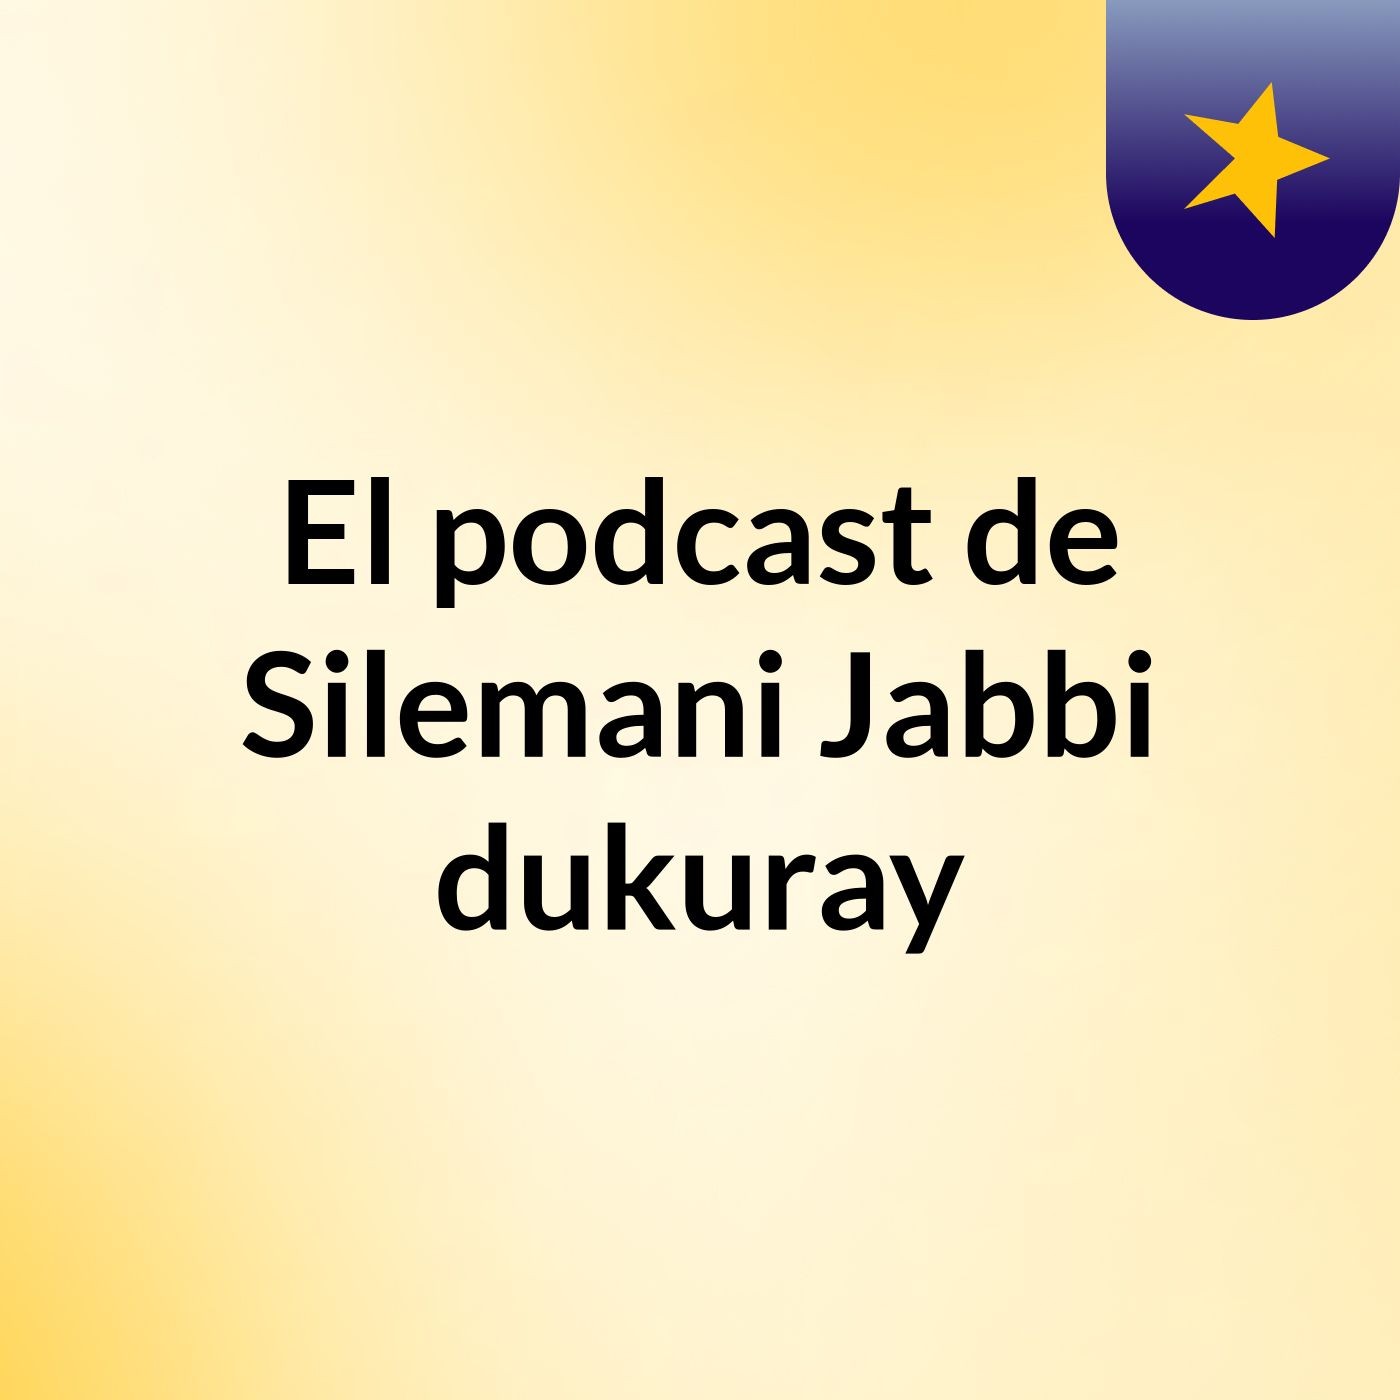 El podcast de Silemani Jabbi dukuray